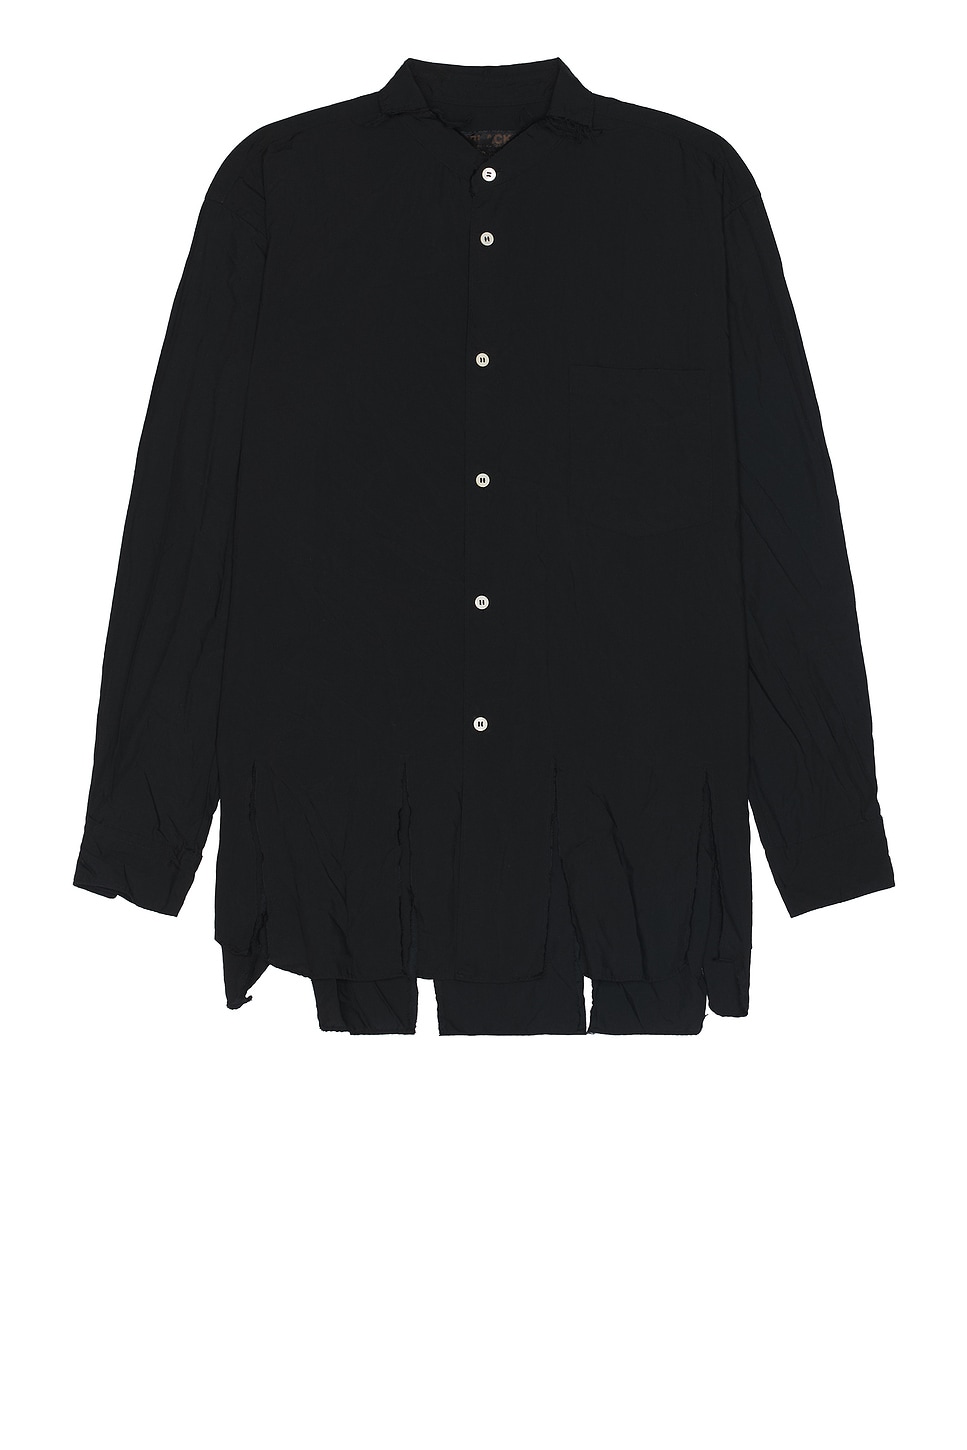 Broad Garment Shirt in Black